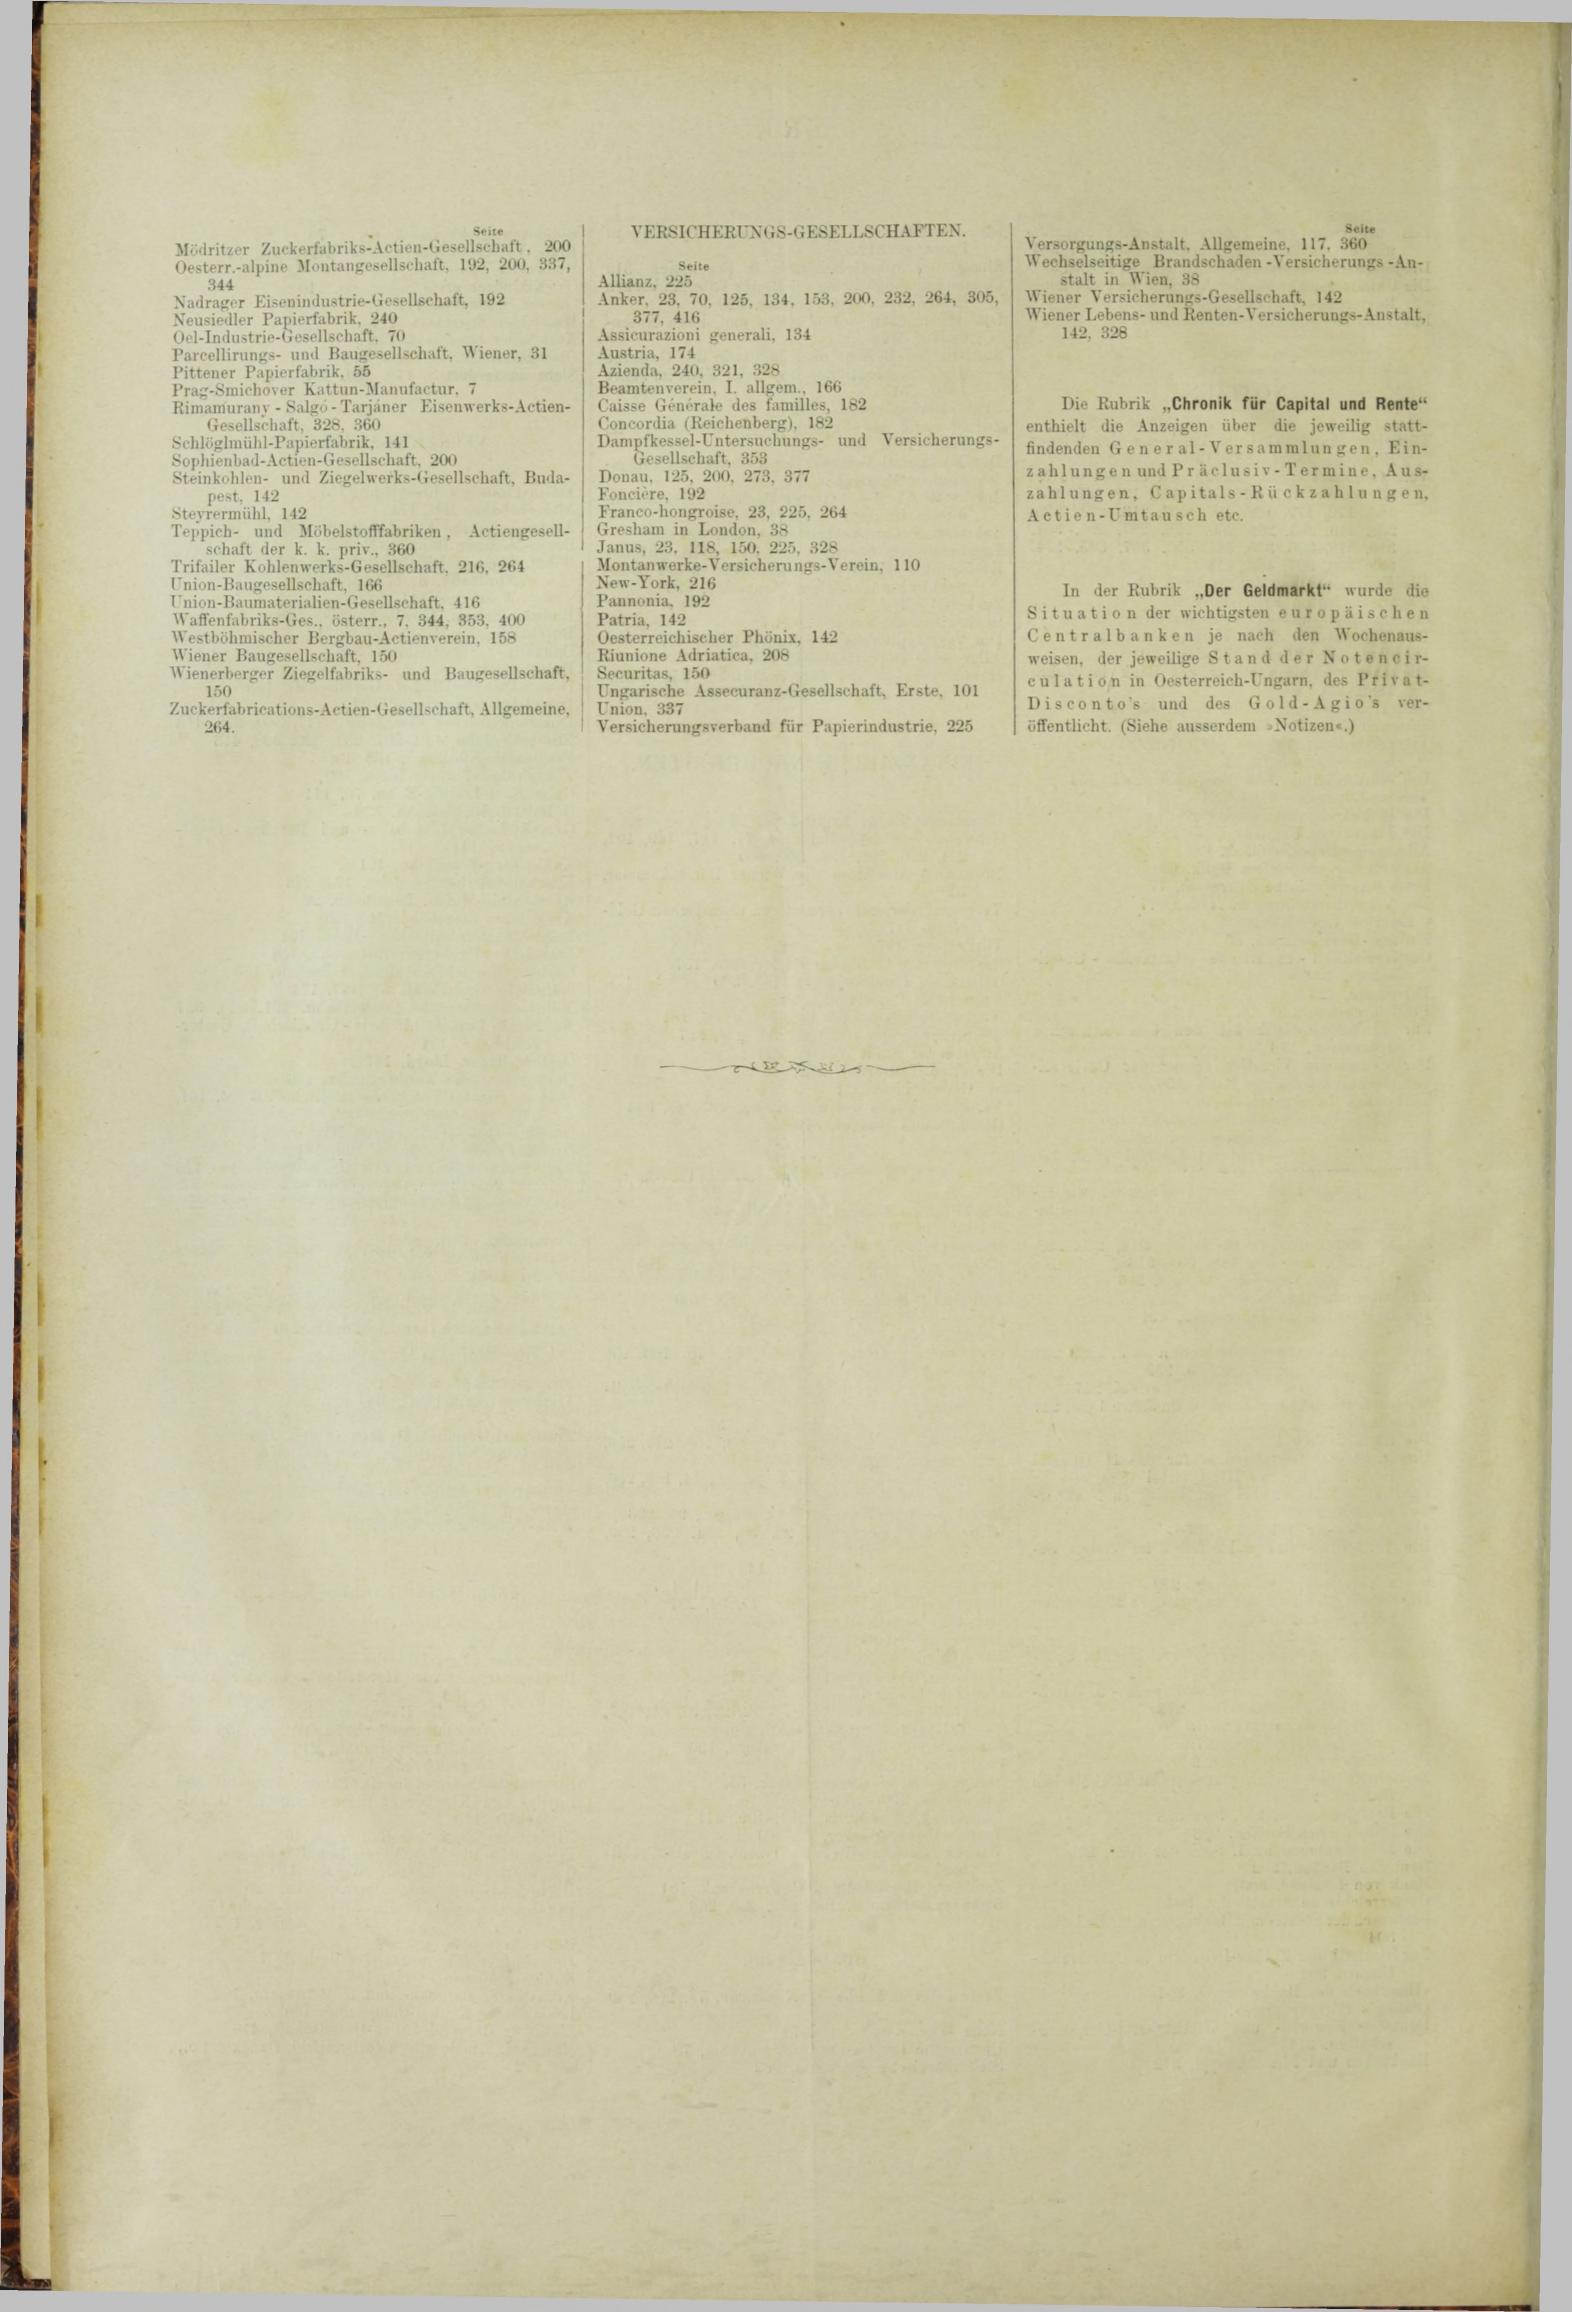 Der Tresor 26.04.1883 - Seite 12